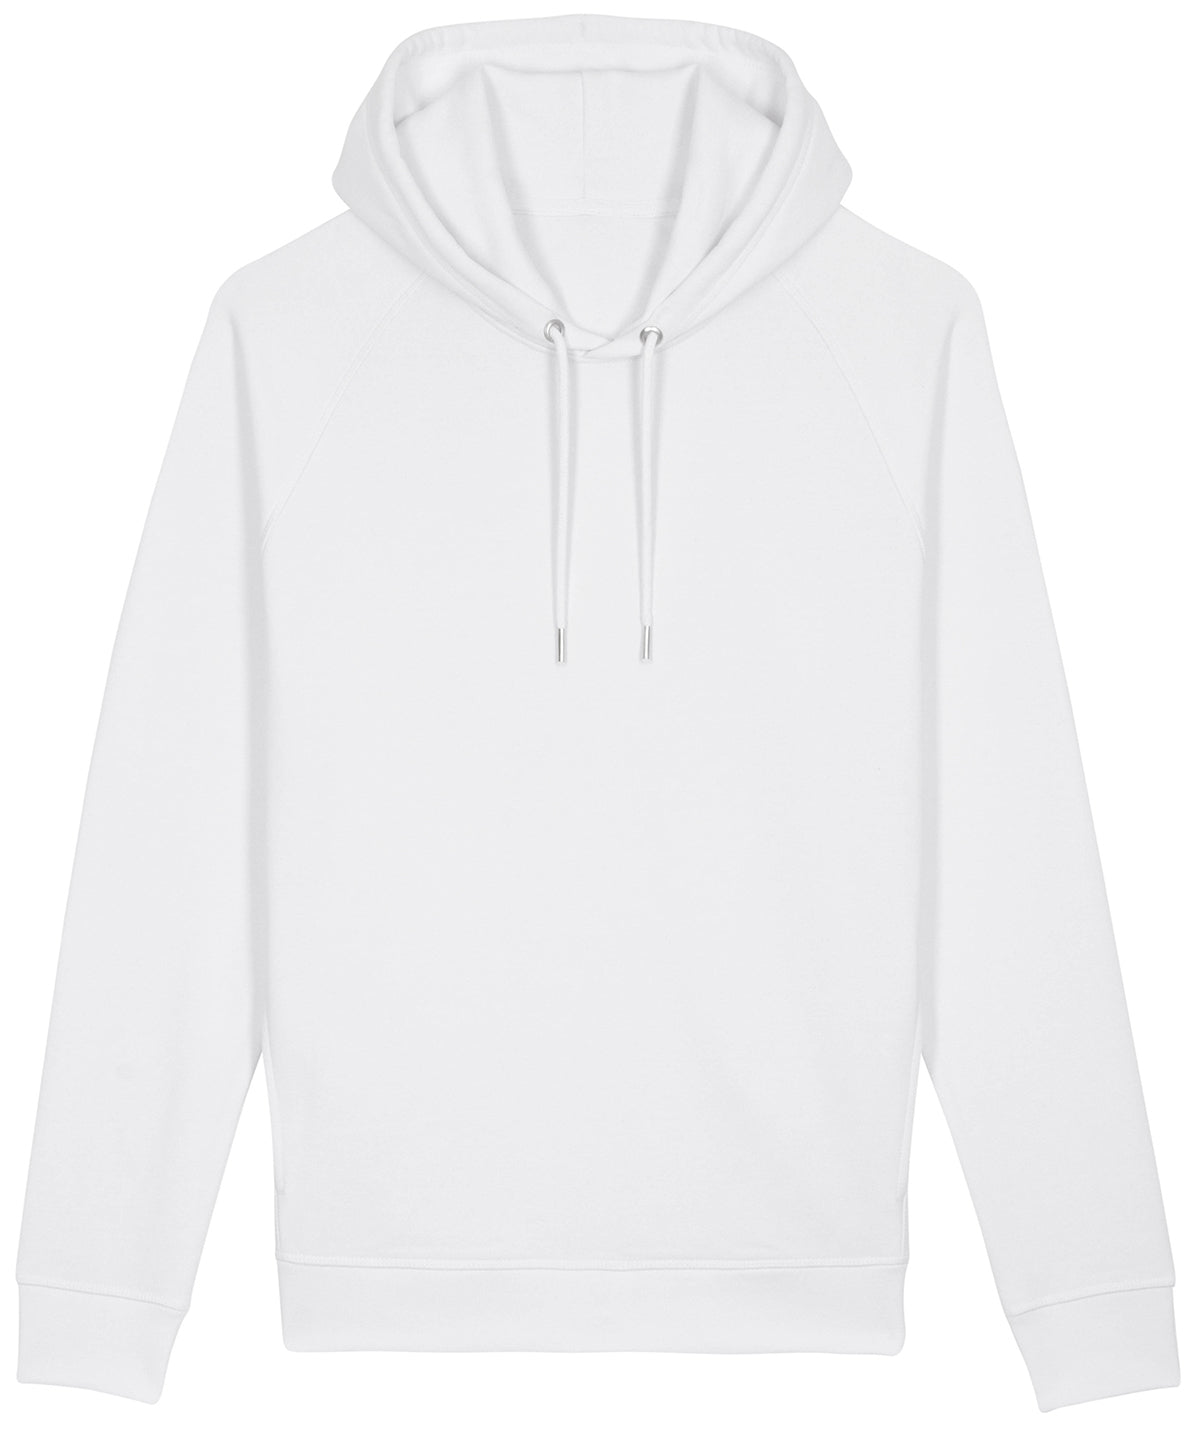 Personalised Hoodies - Burgundy Stanley/Stella Sider unisex side pocket hoodie  (STSU824)